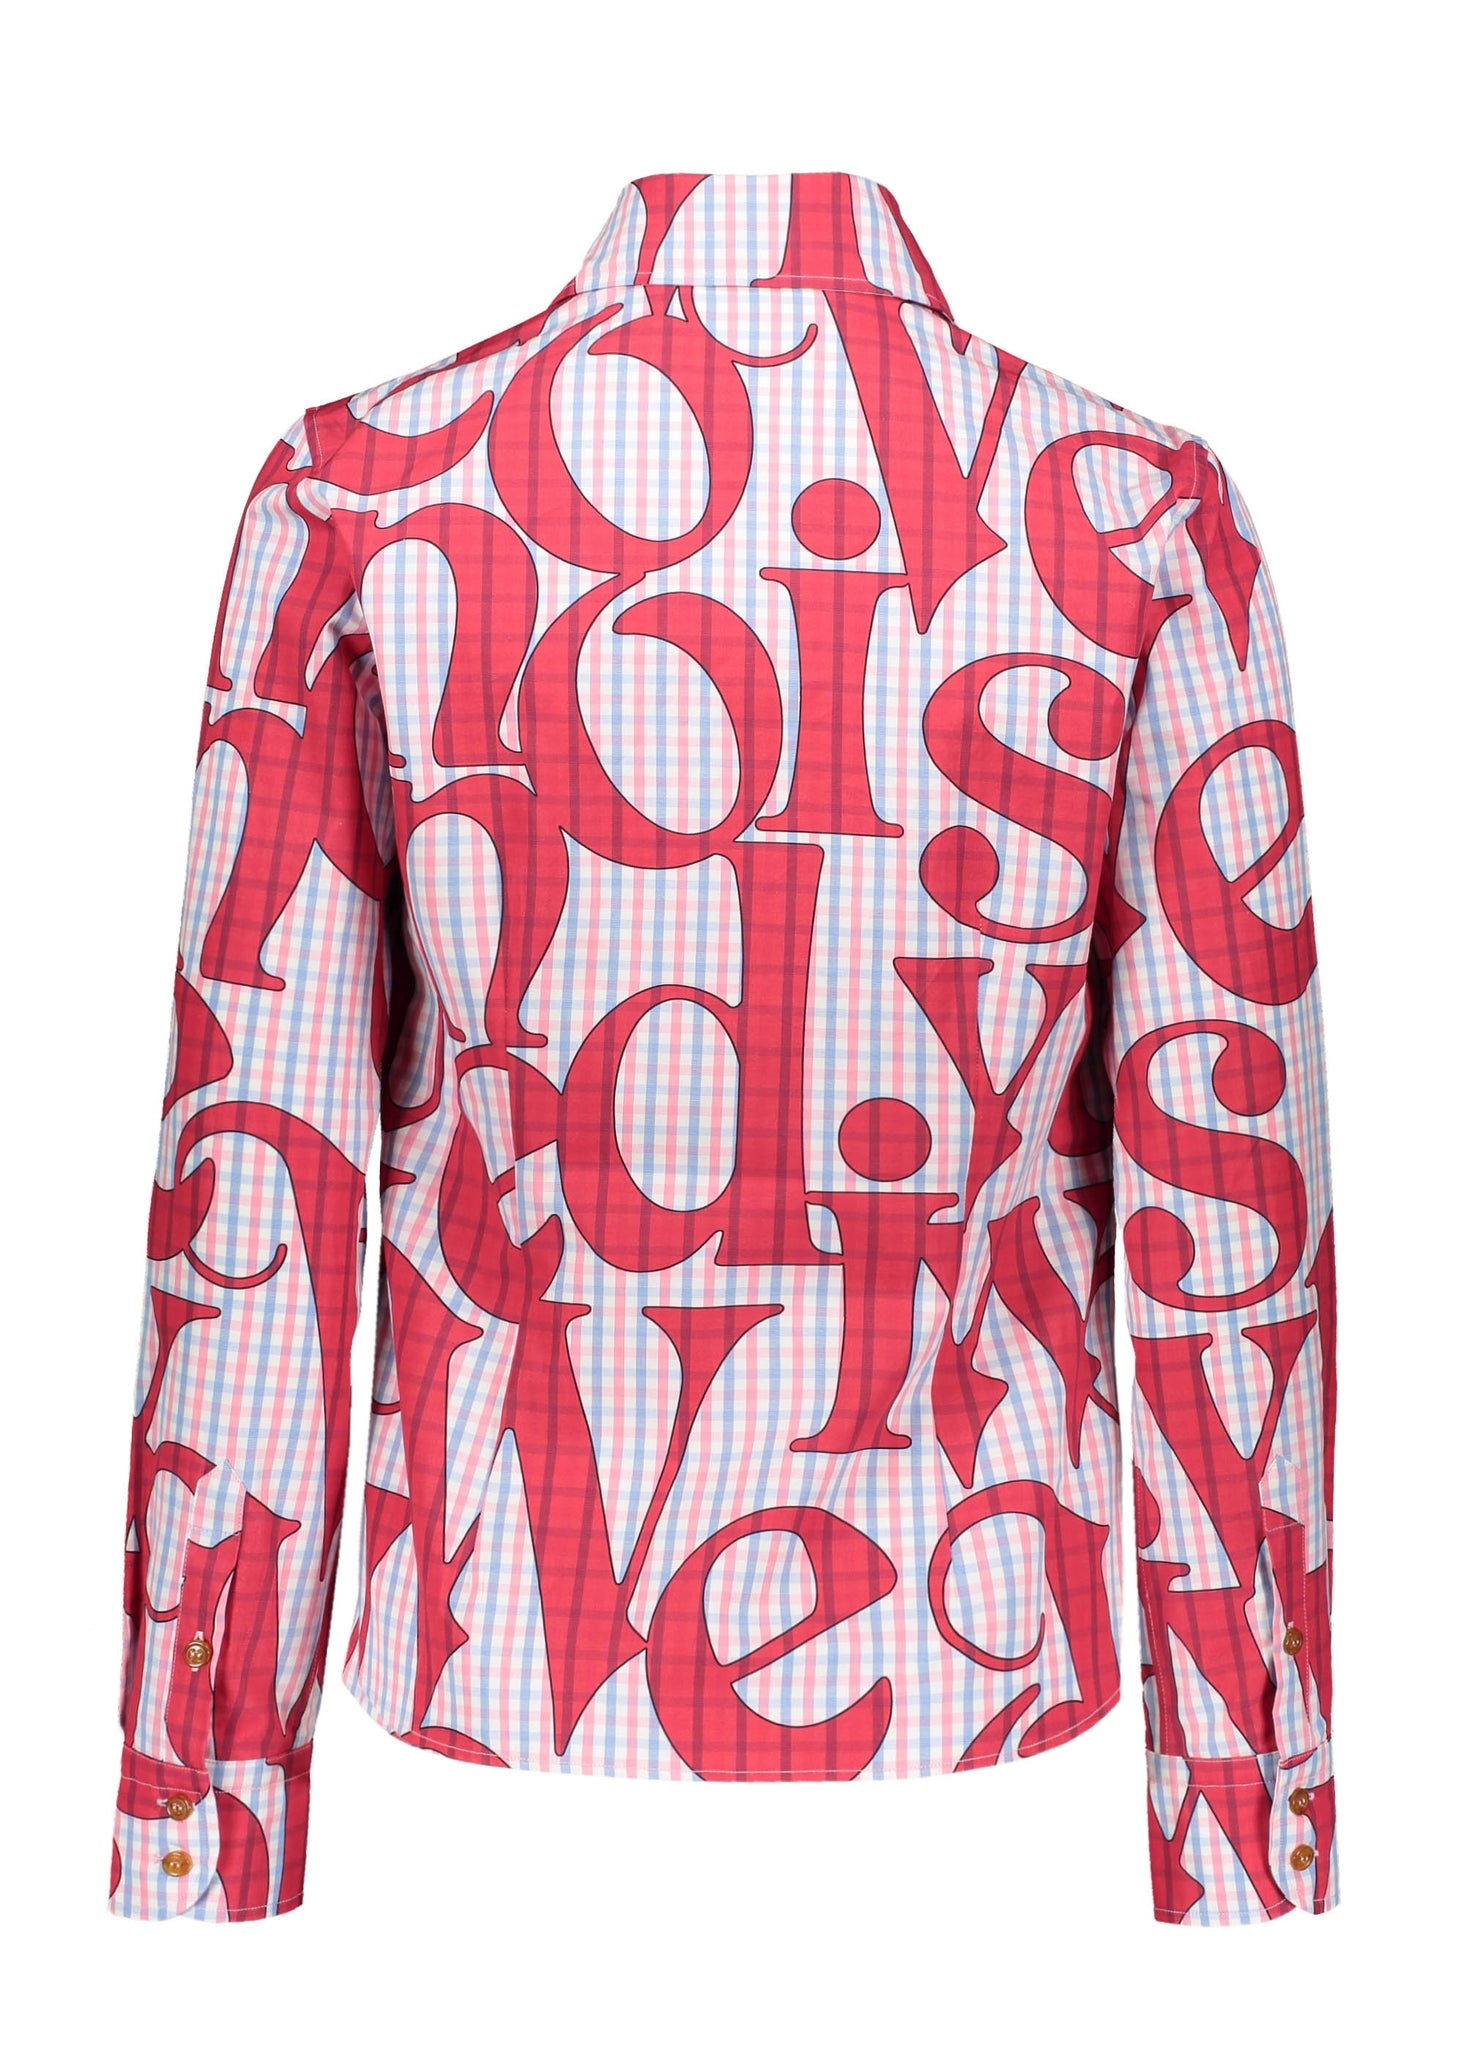 Vivienne Westwood Toulouse Shirt - Logomania